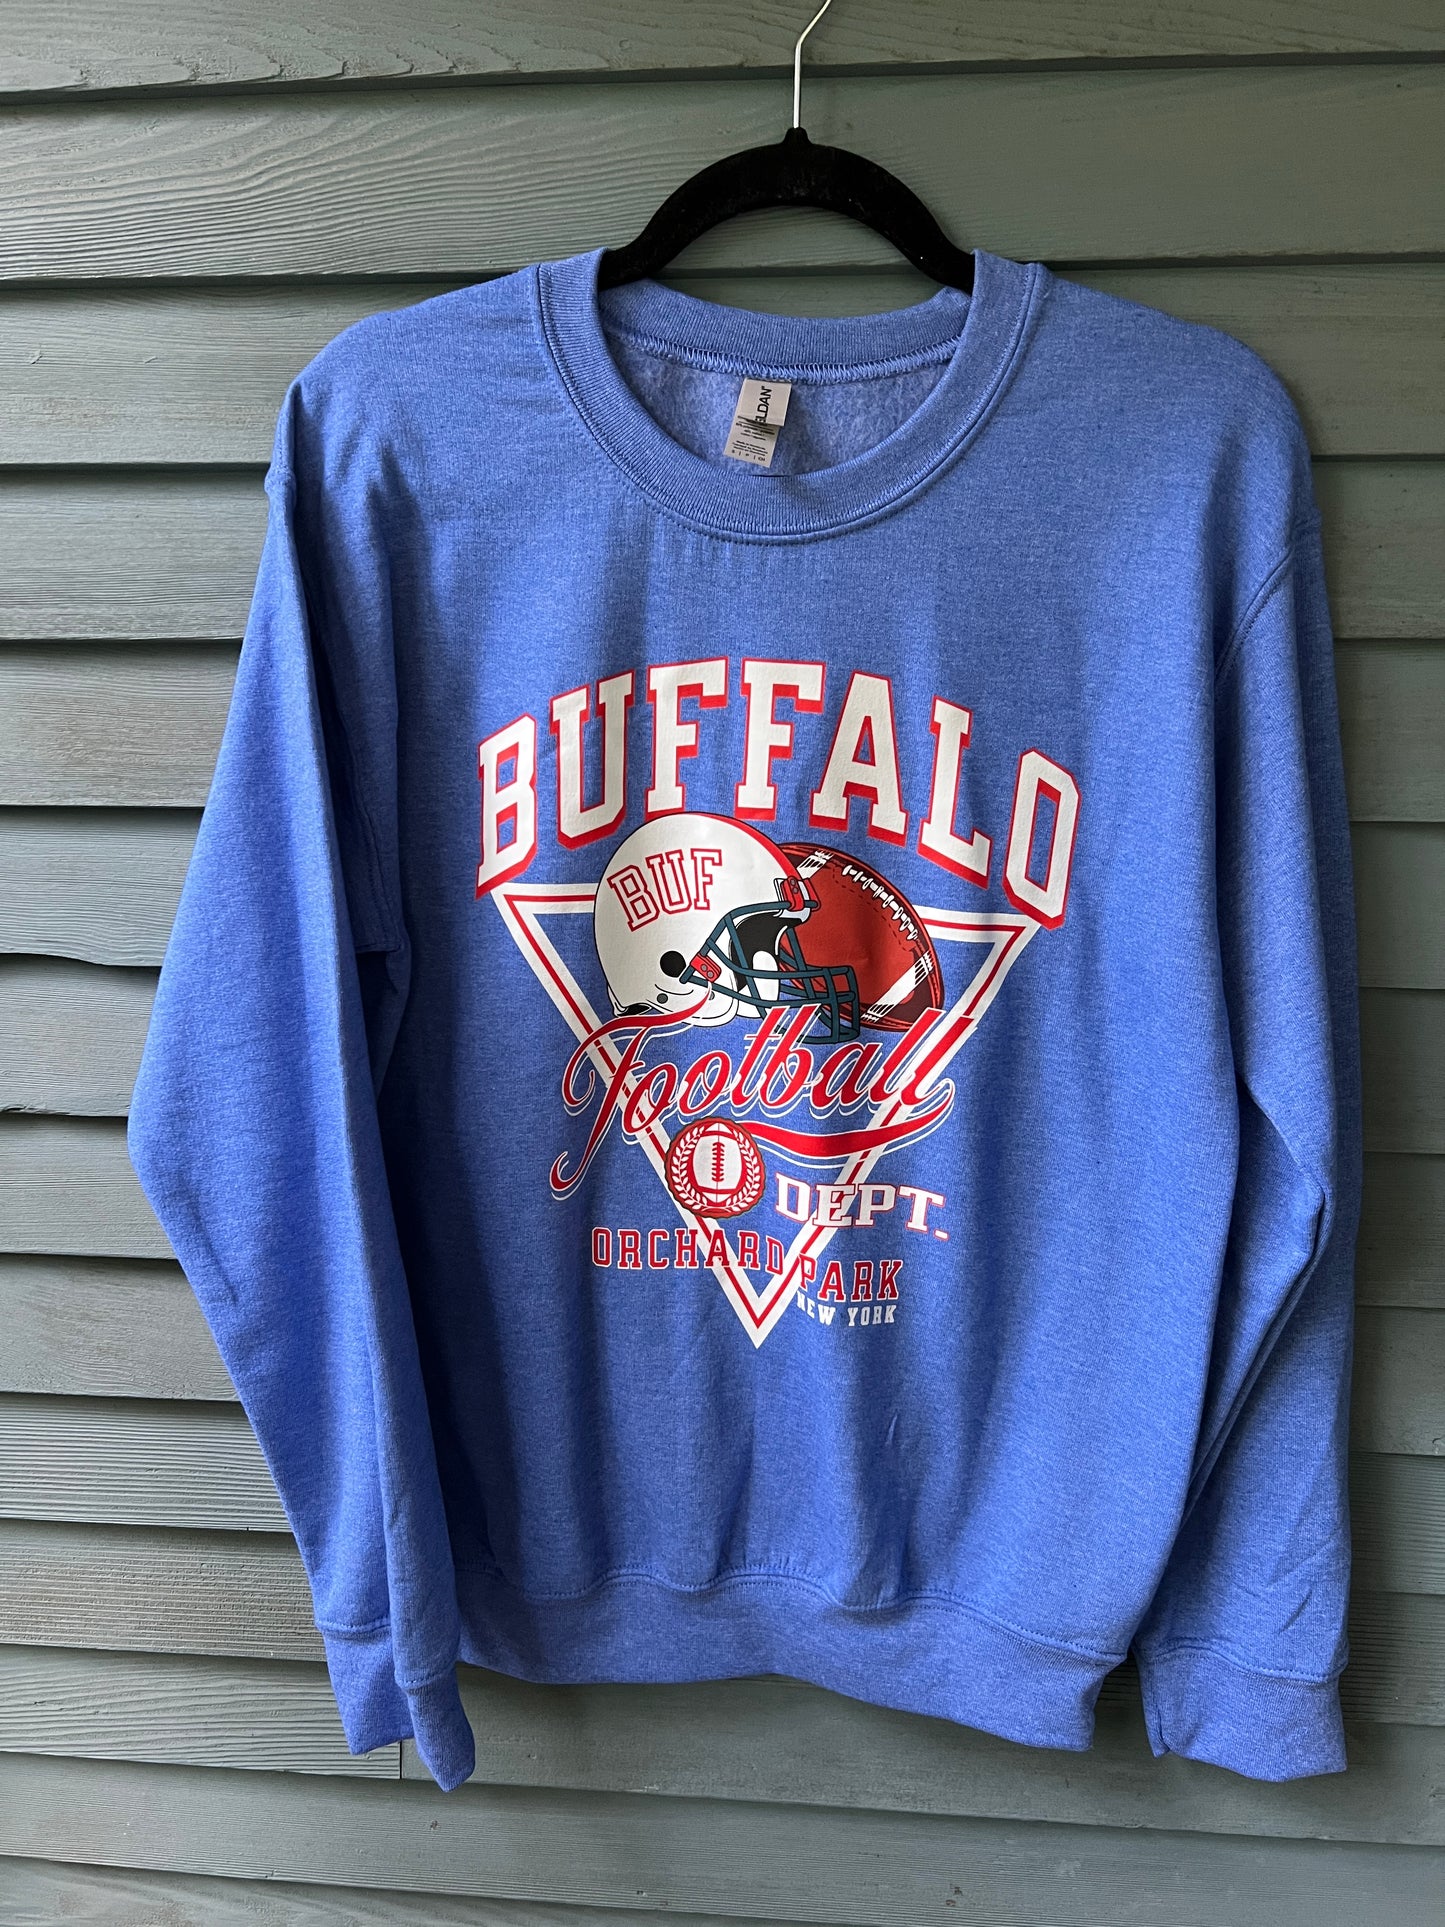 Buffalo football old school crewneck, Buffalo football t-shirt, Buffalo Football Dept retro inspired